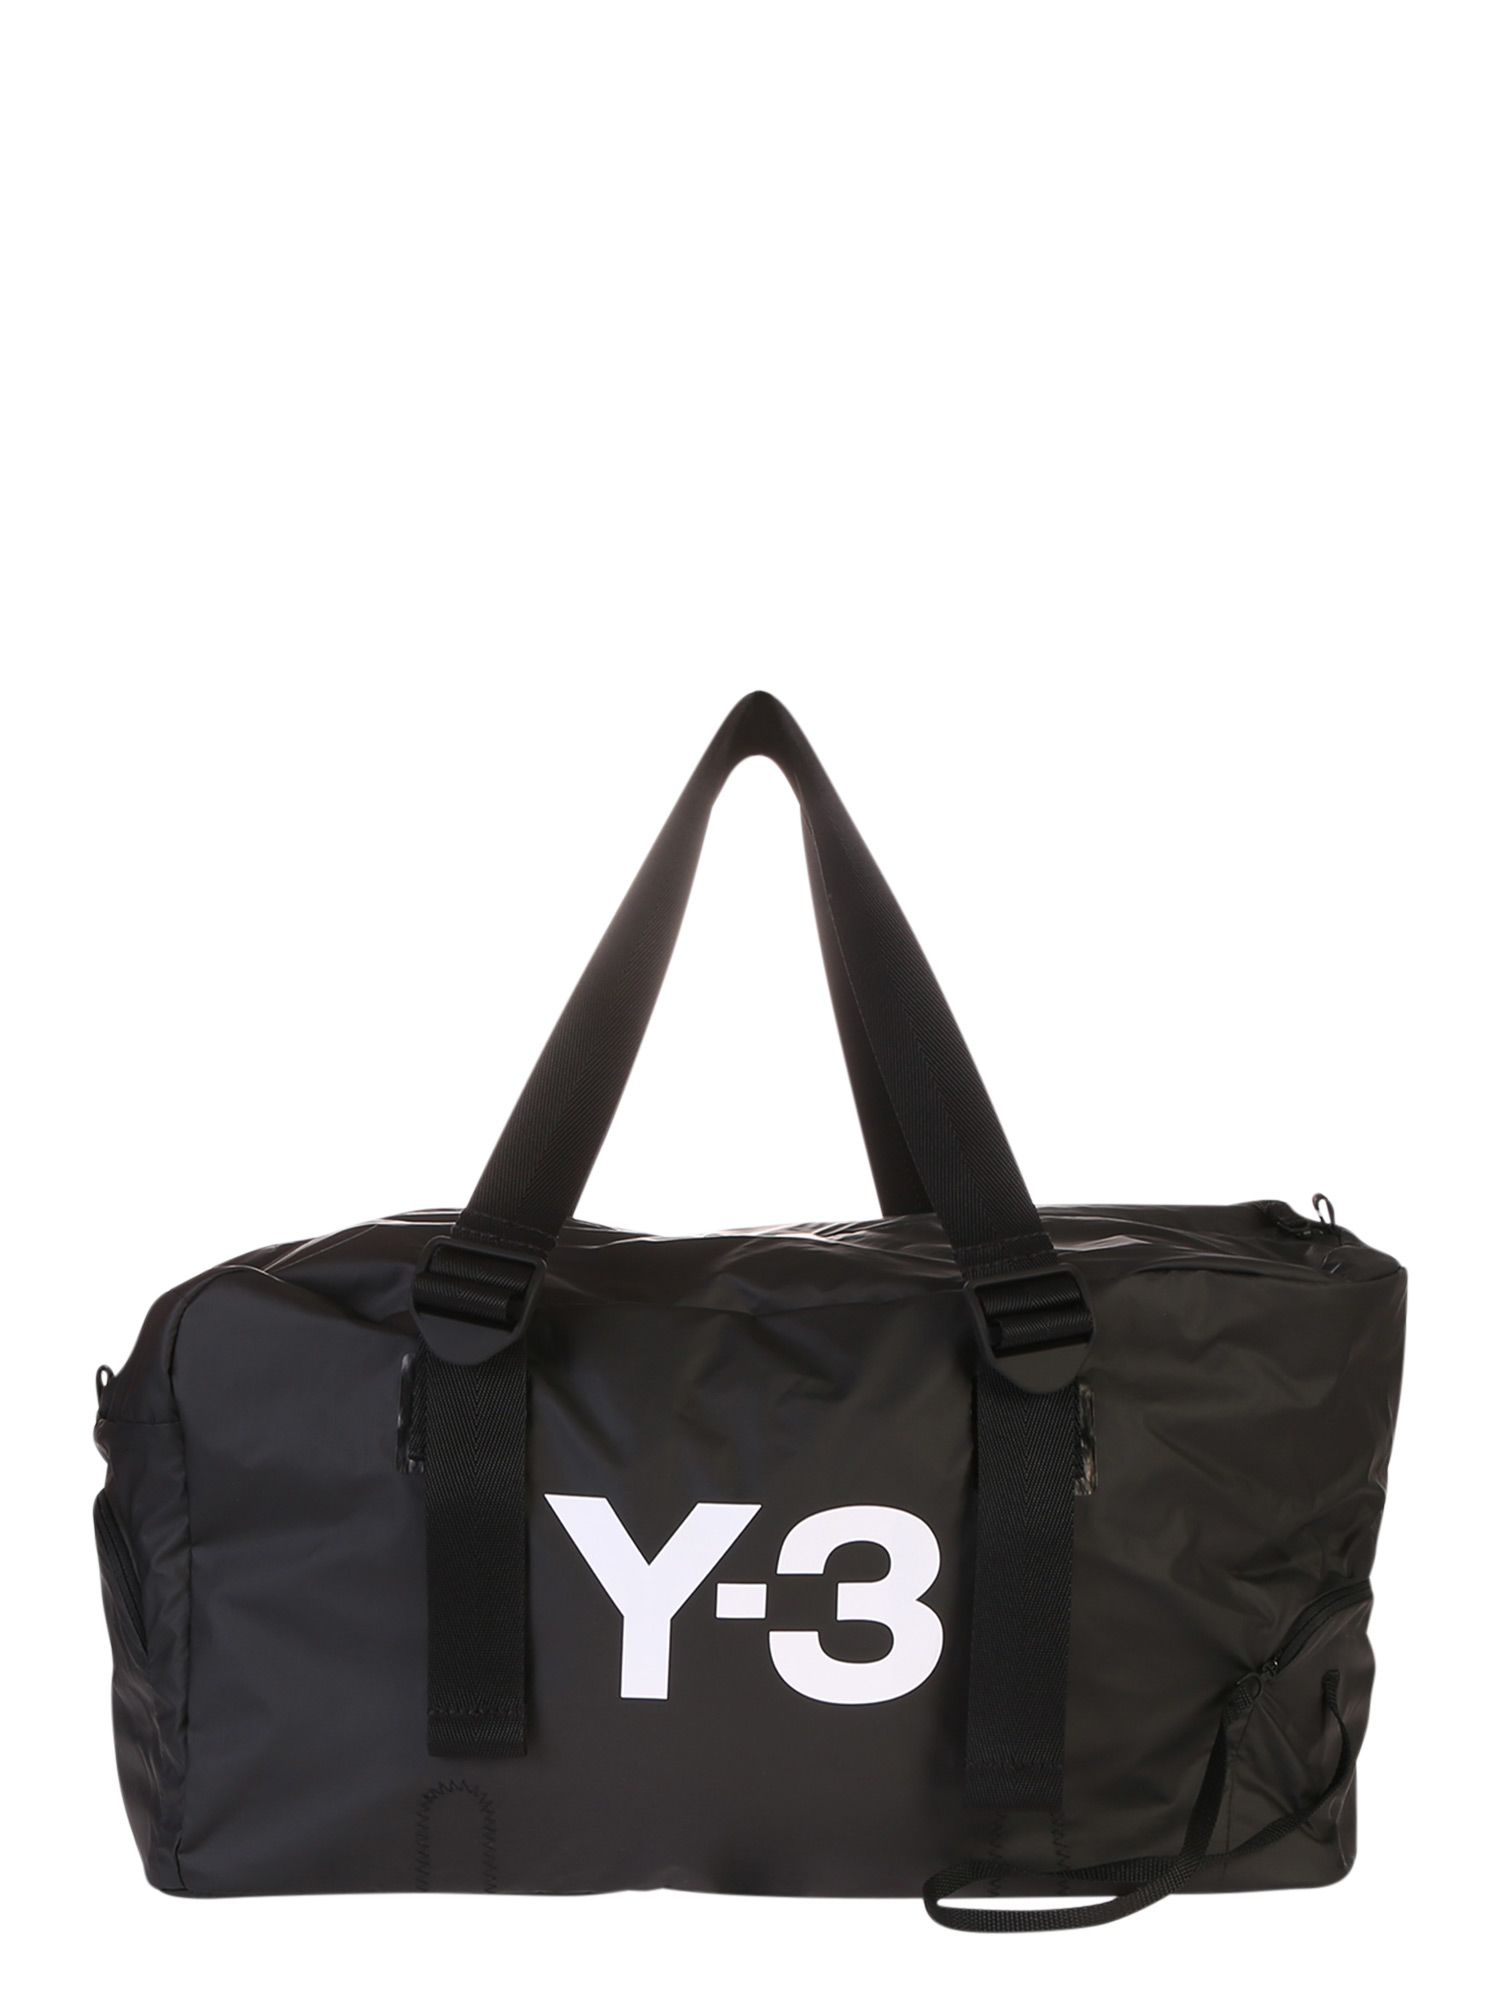 y3 bag price